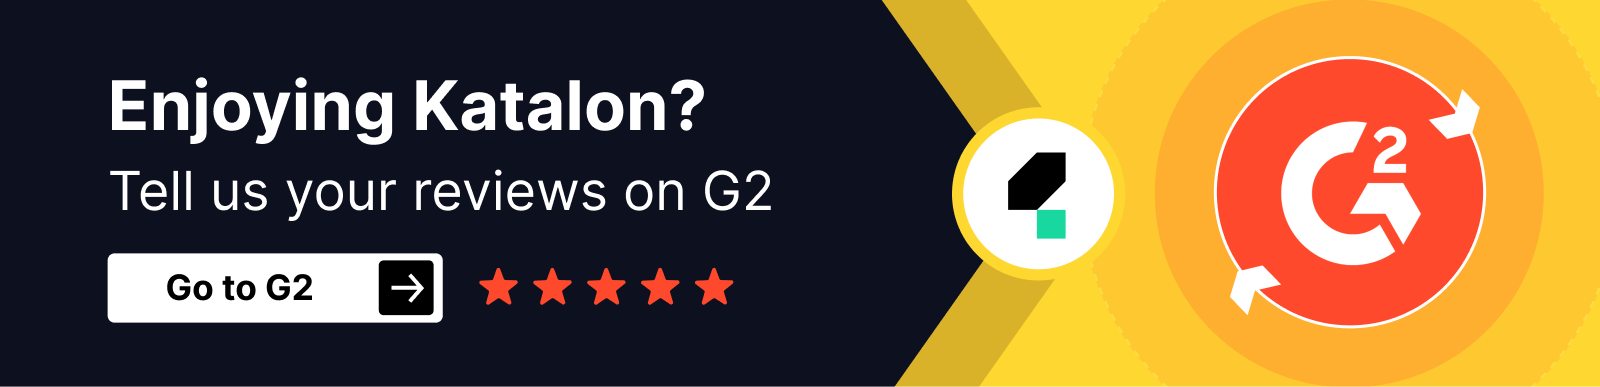 Enjoy Katalon? Give reviews on G2